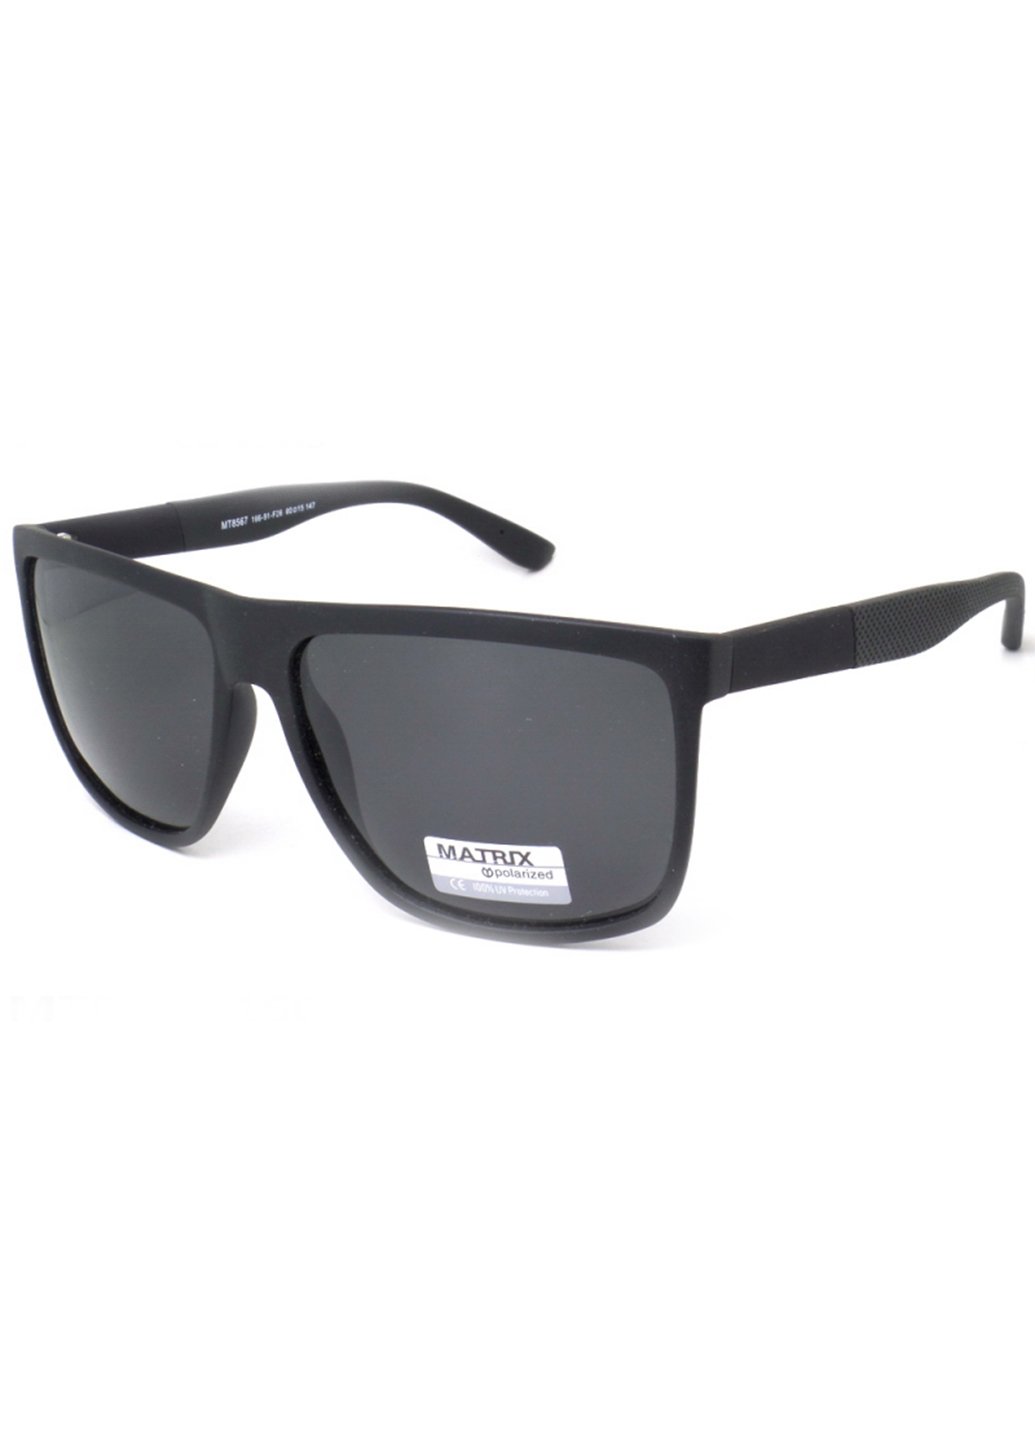 Купить Черные мужские солнцезащитные очки Matrix с поляризацией MT8567 111007 в интернет-магазине